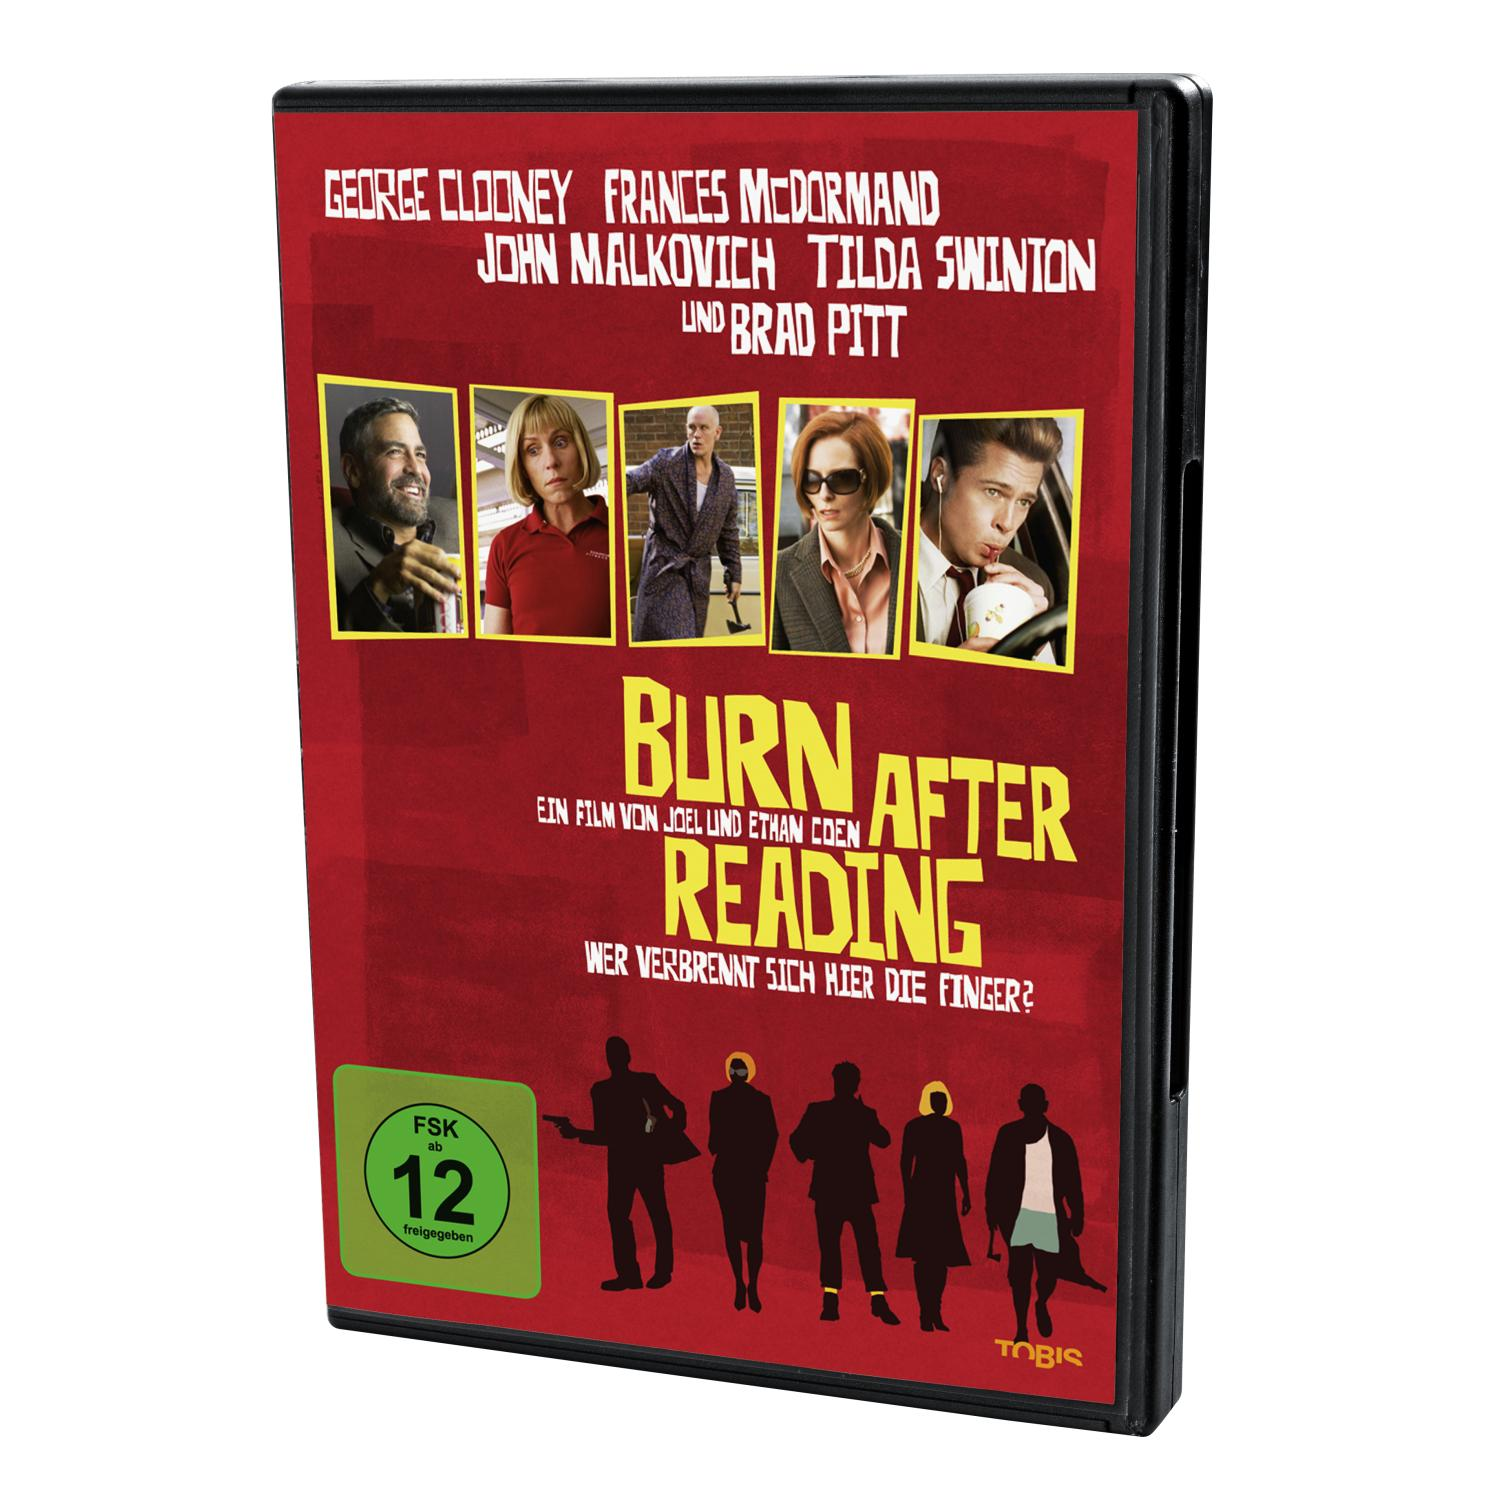 hier After verbrennt Burn Wer DVD - die Reading sich Finger?